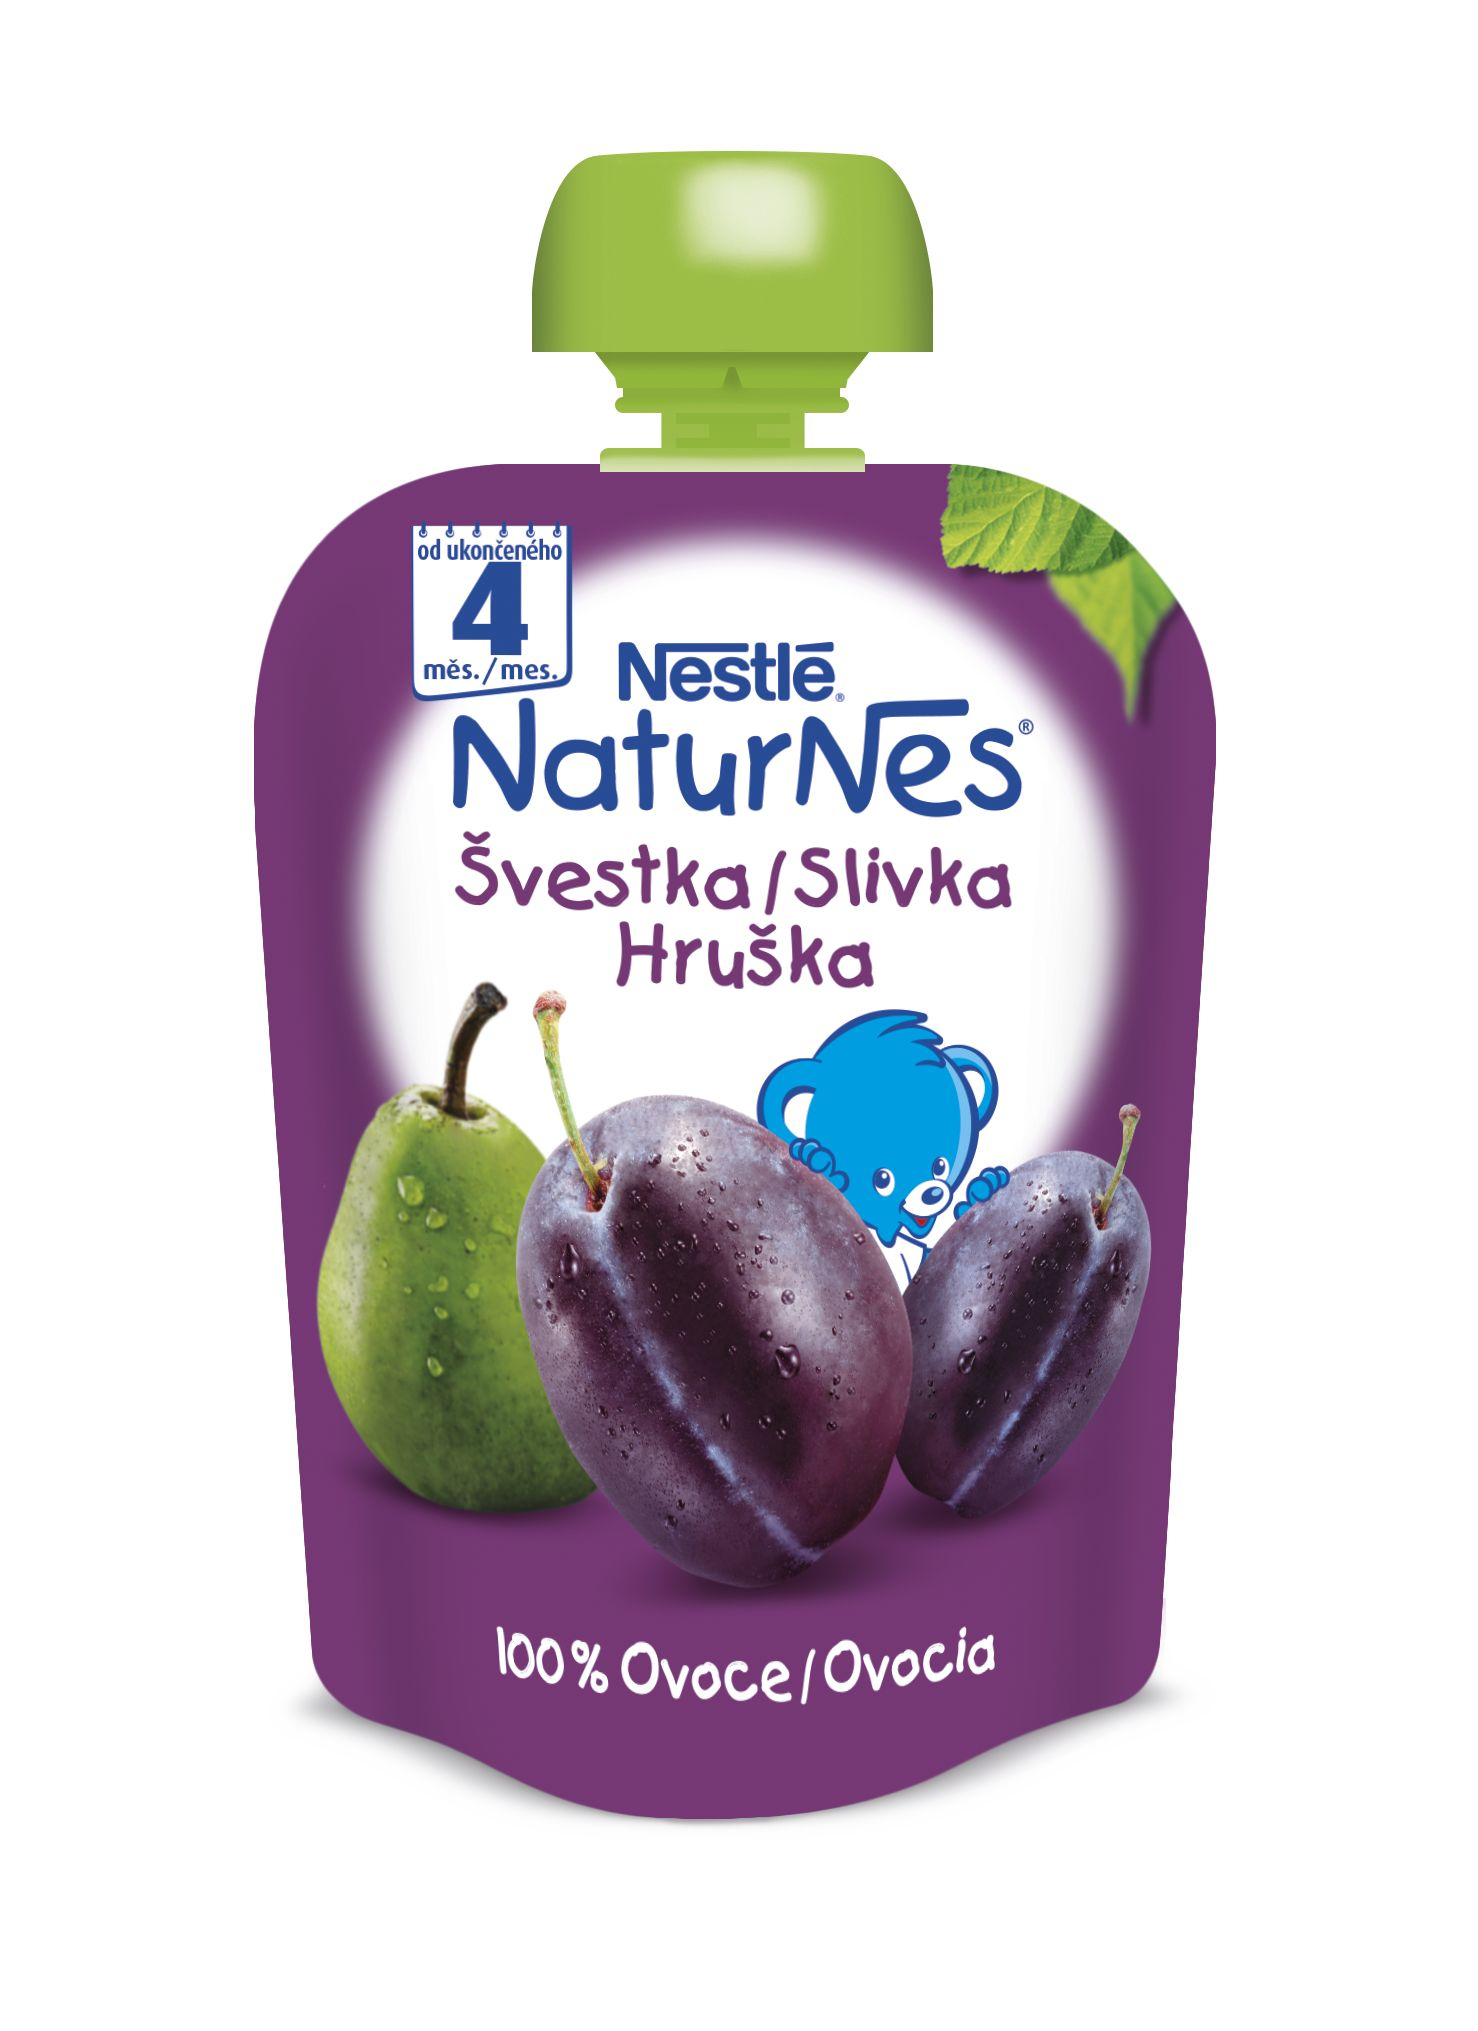 Nestlé Naturnes Švestka hruška kapsička 90 g Nestlé